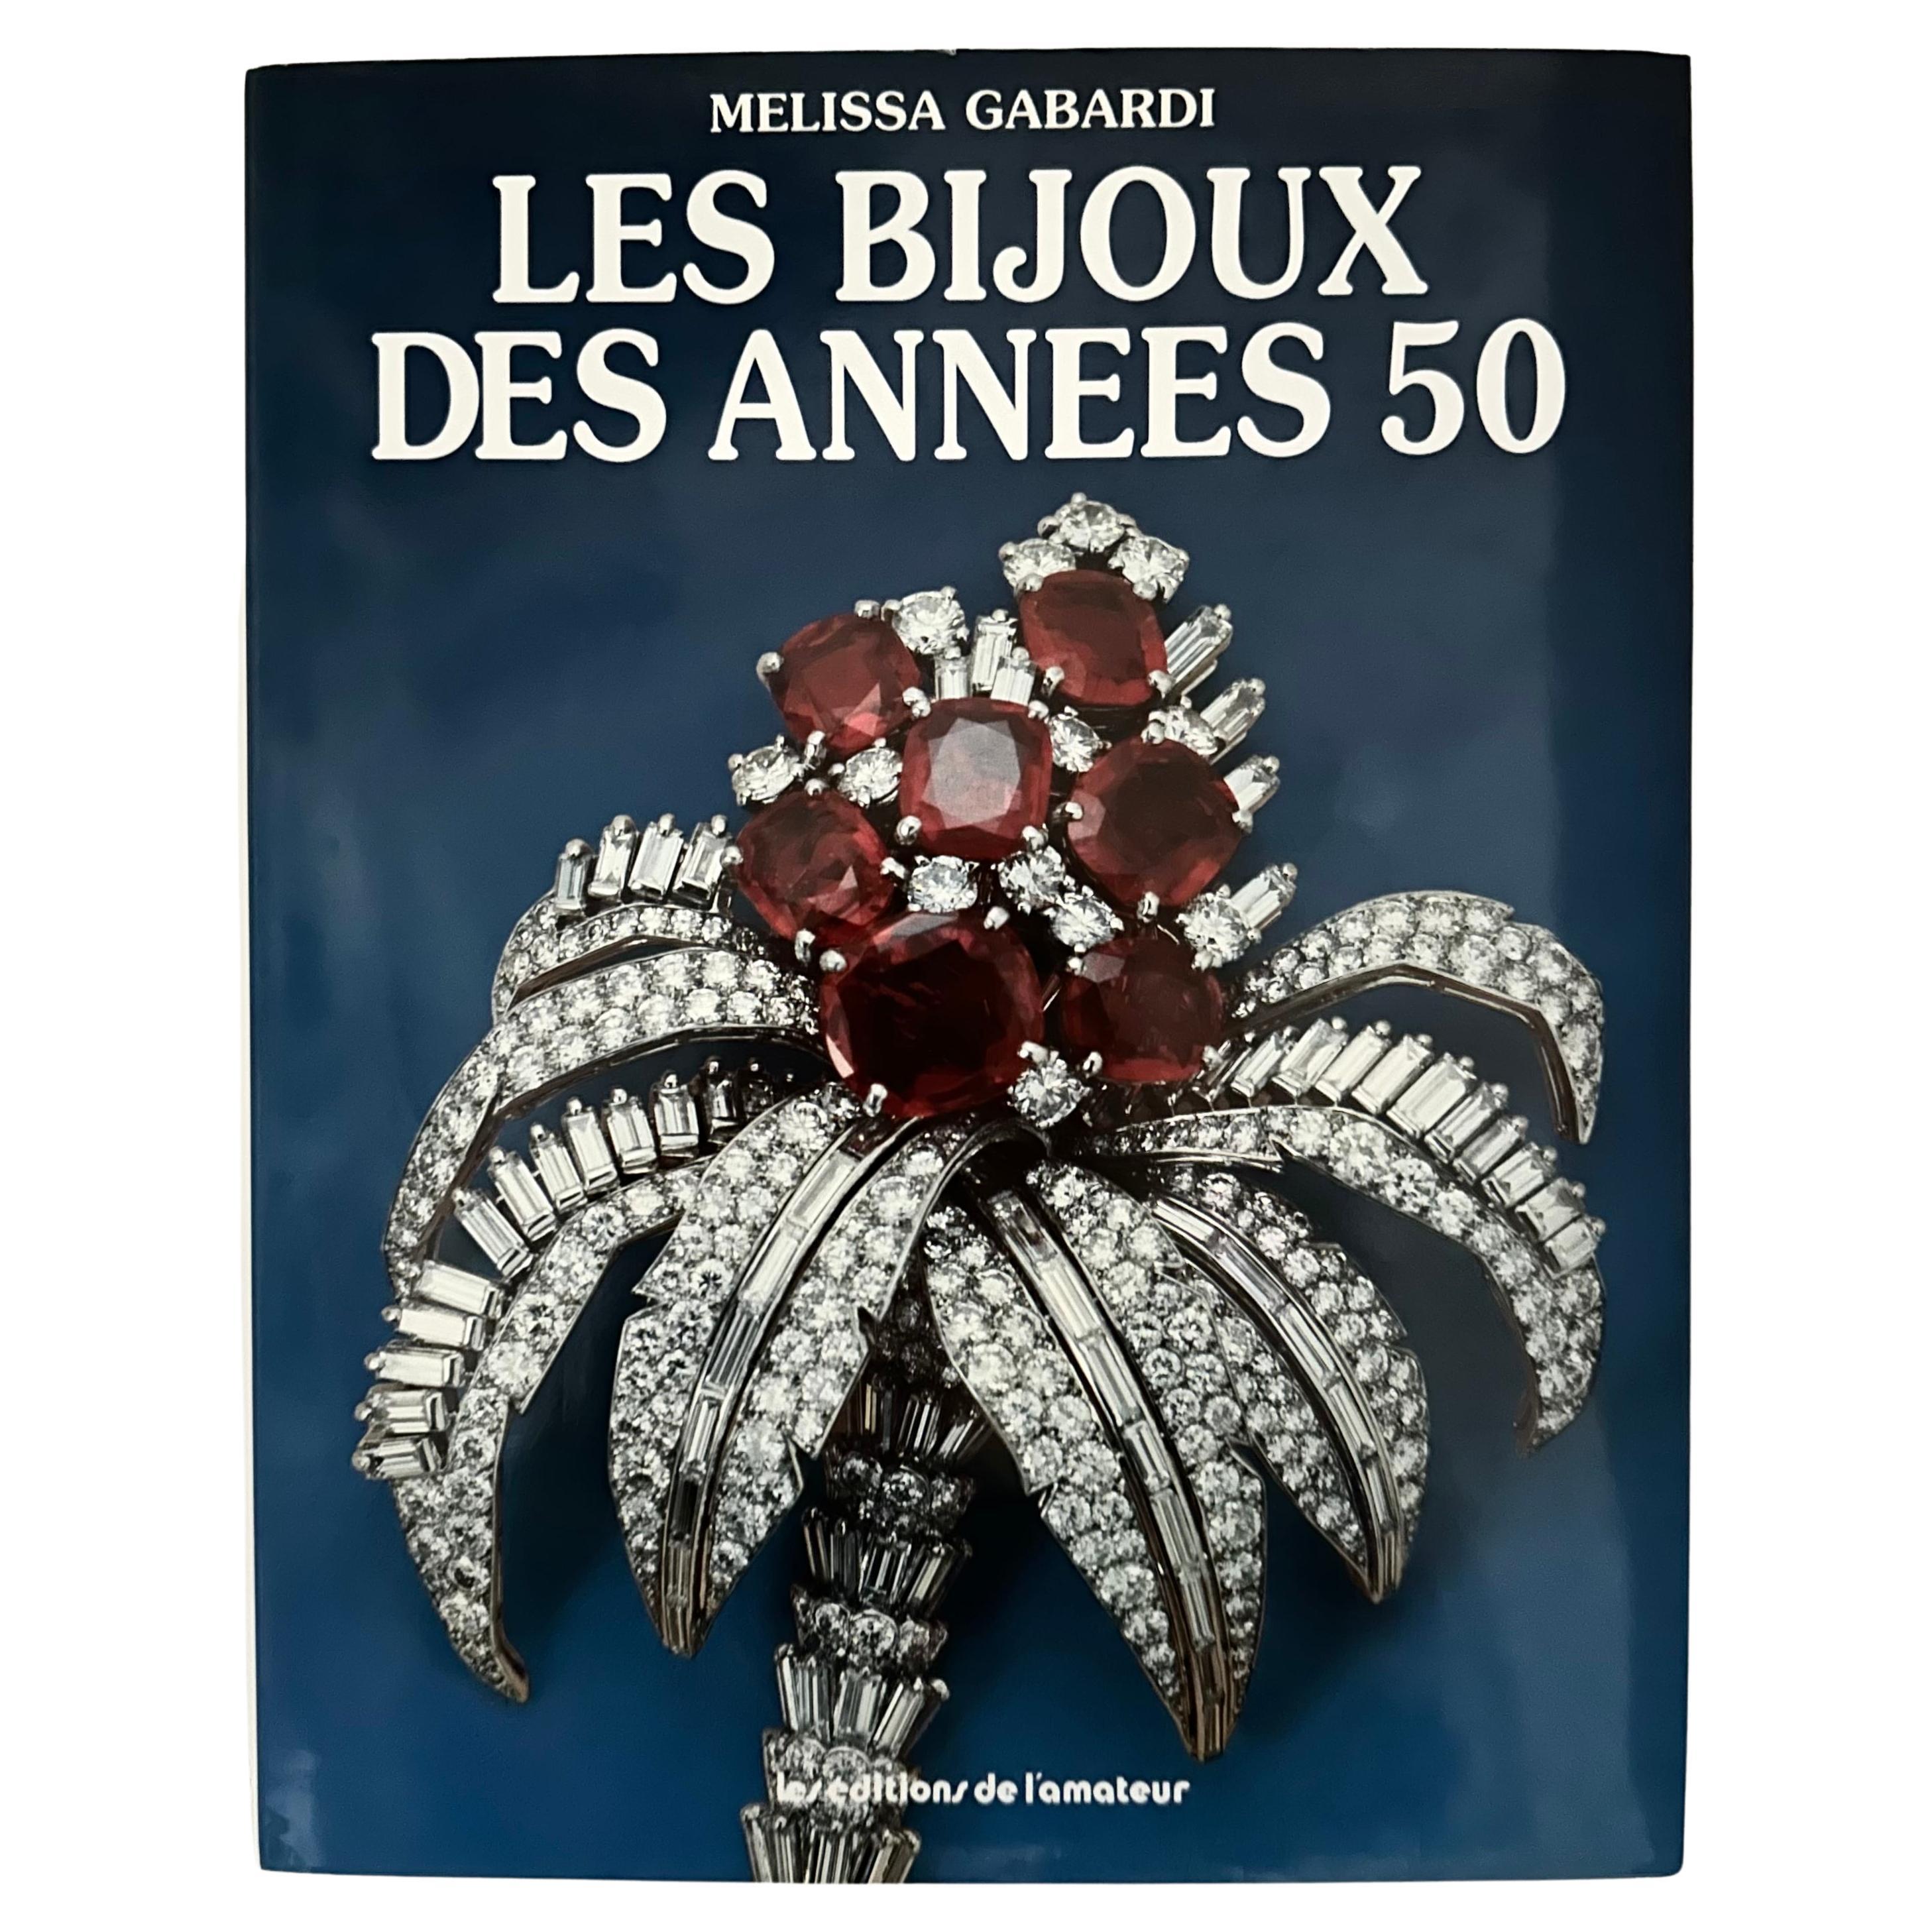 Les Bijoux des Années 50 - Melissa Gabardi - 1ère édition française, Paris, 1987